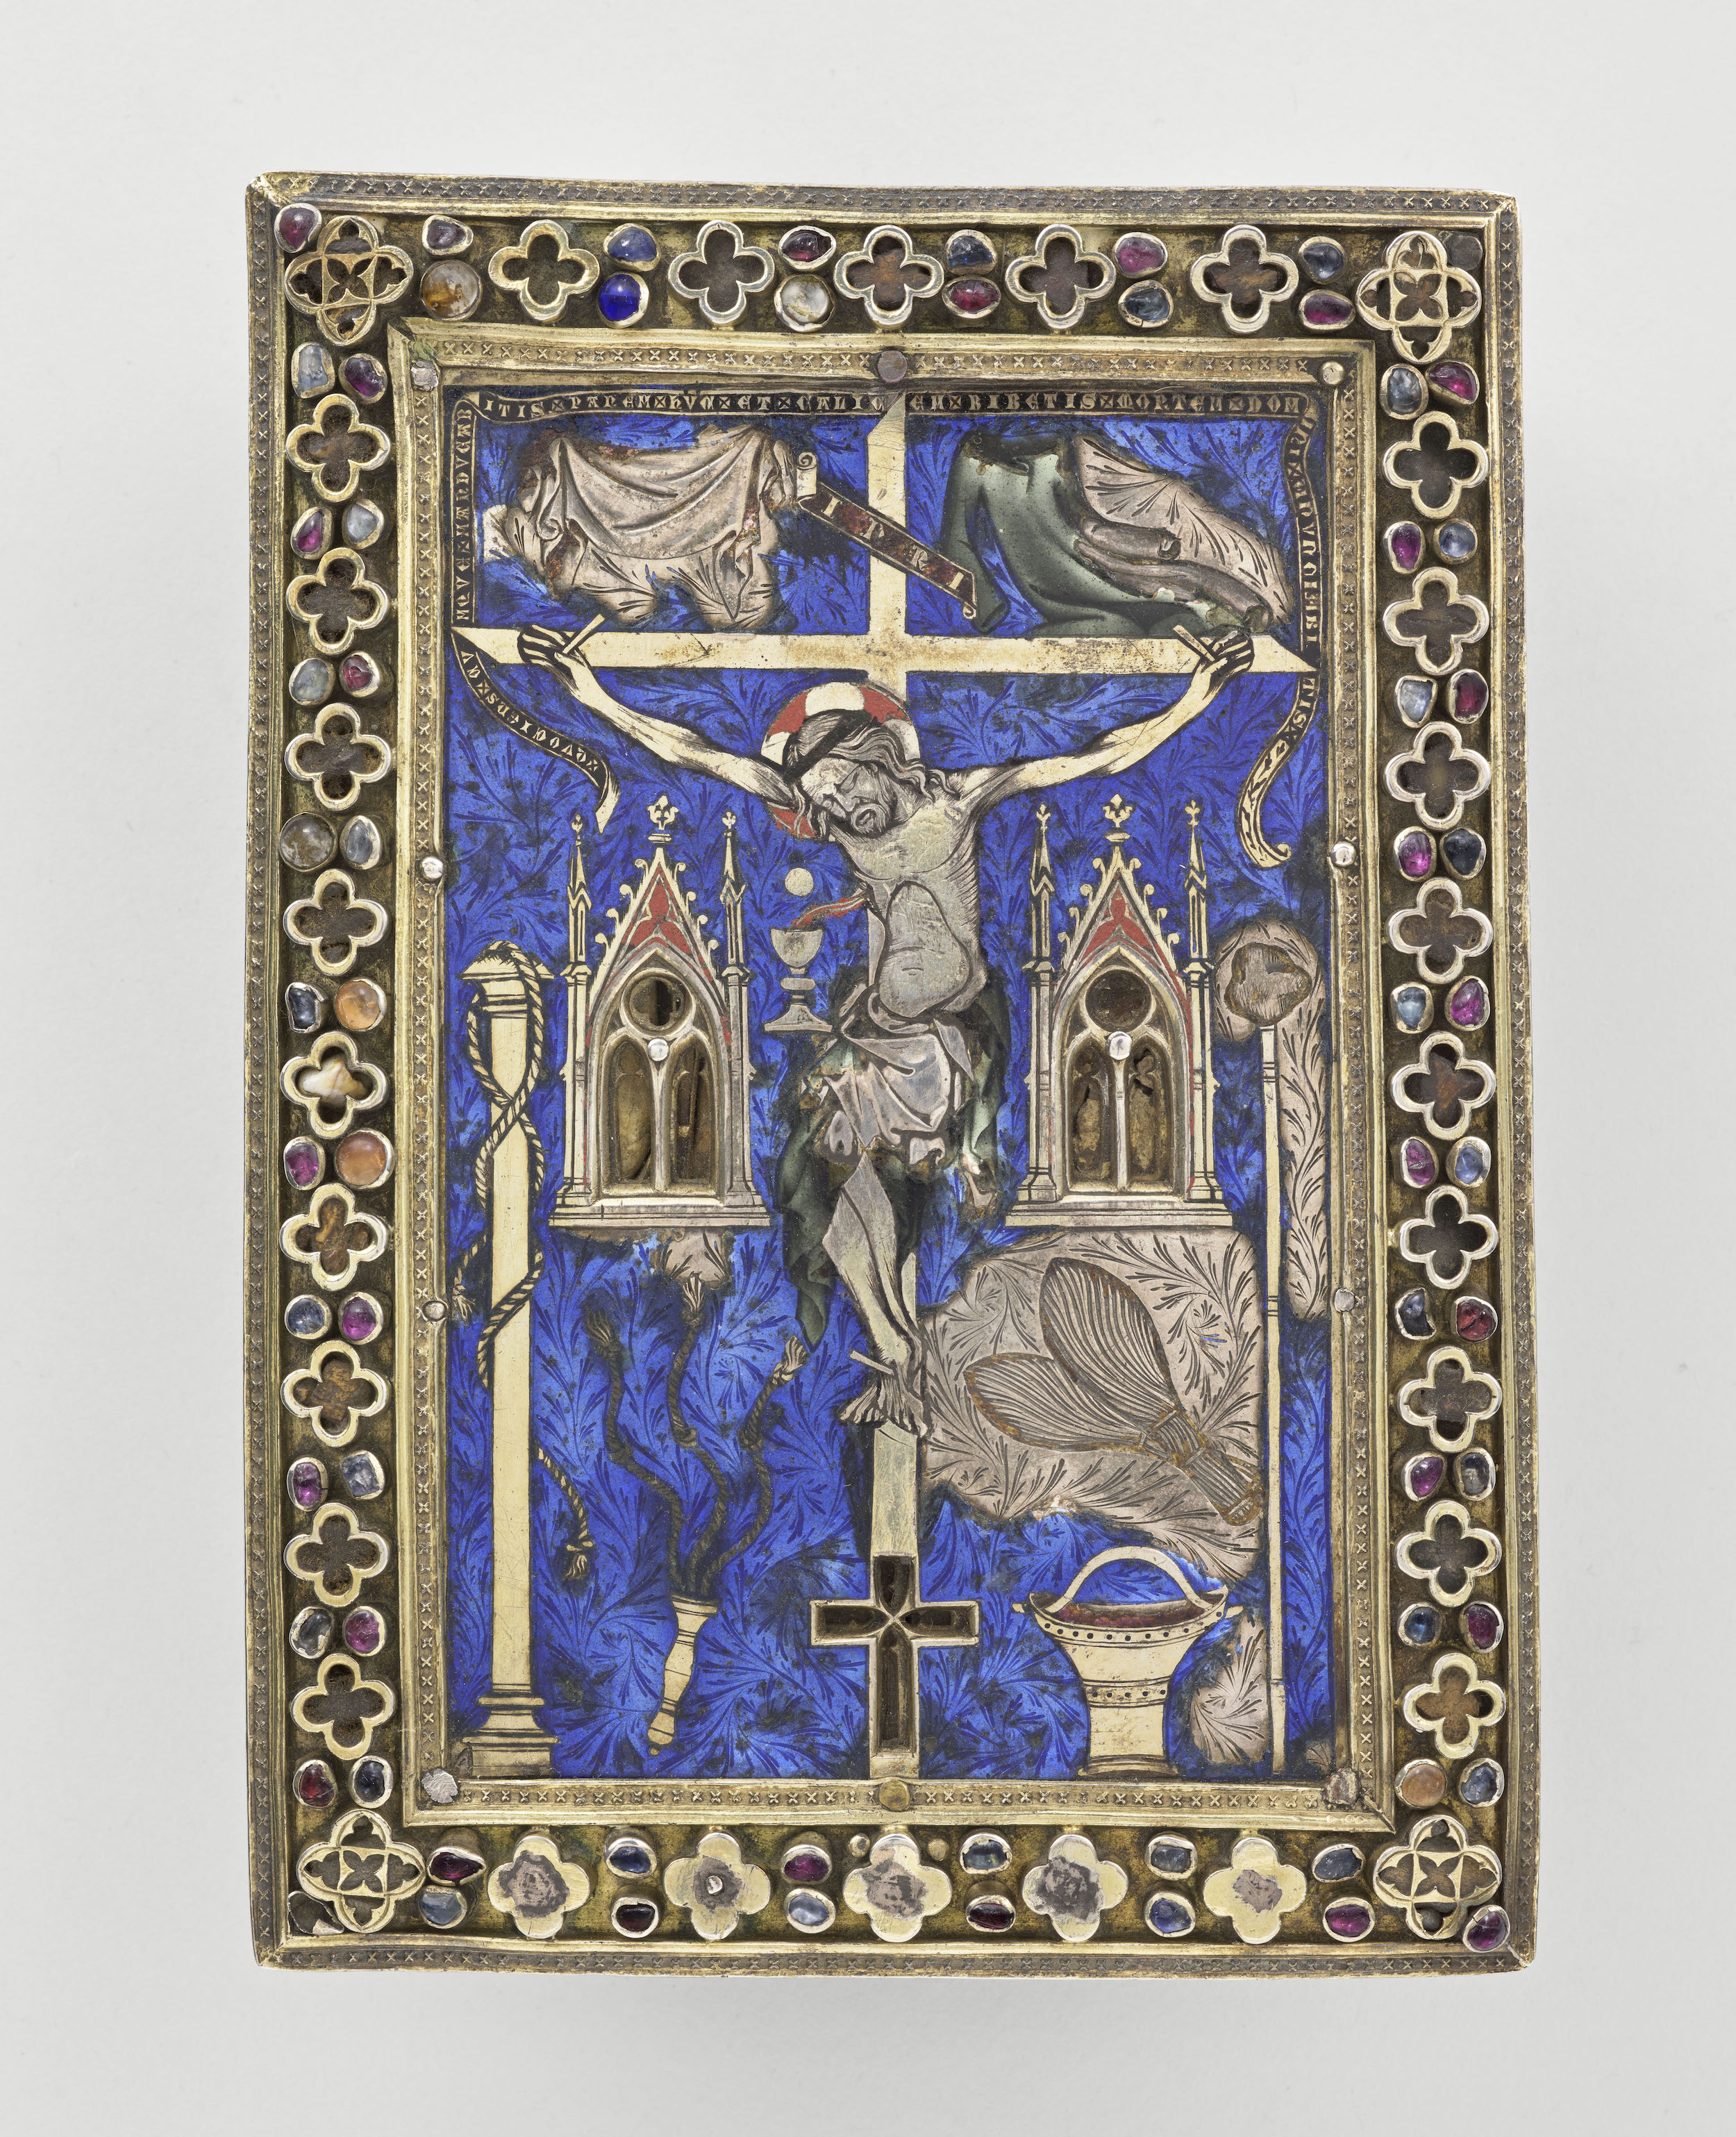 Peinture reliquaire avec une Crucifixion by Artiste Inconnu - 15th Century - 17.5 x 12.8 cm Musée de Cluny